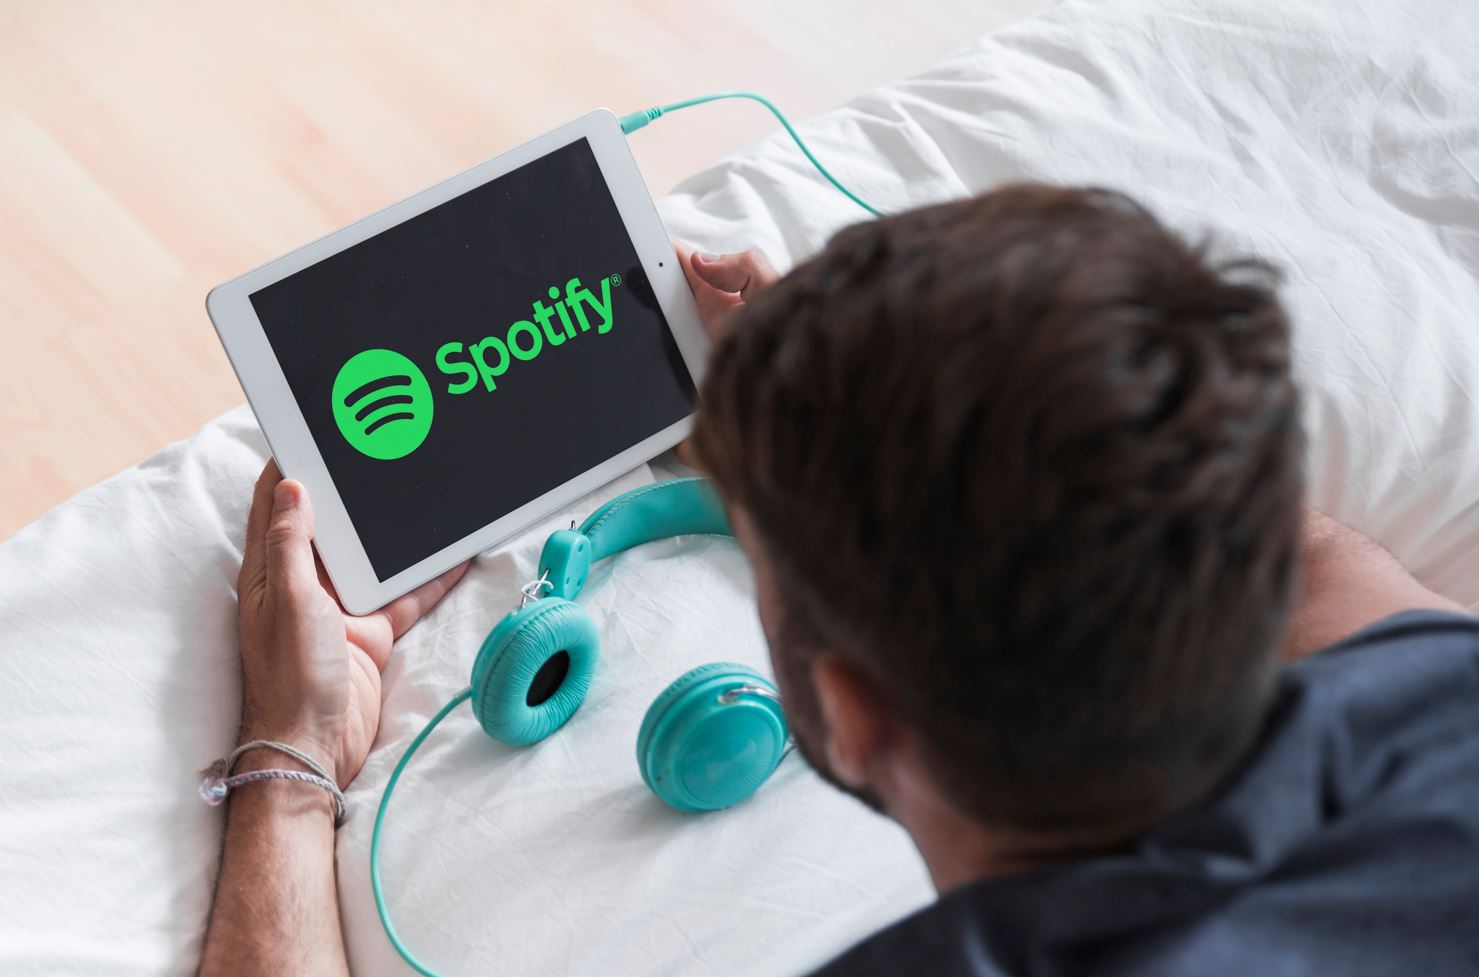 Spotify do të shkurtojë 17% të fuqisë punëtore nga janari